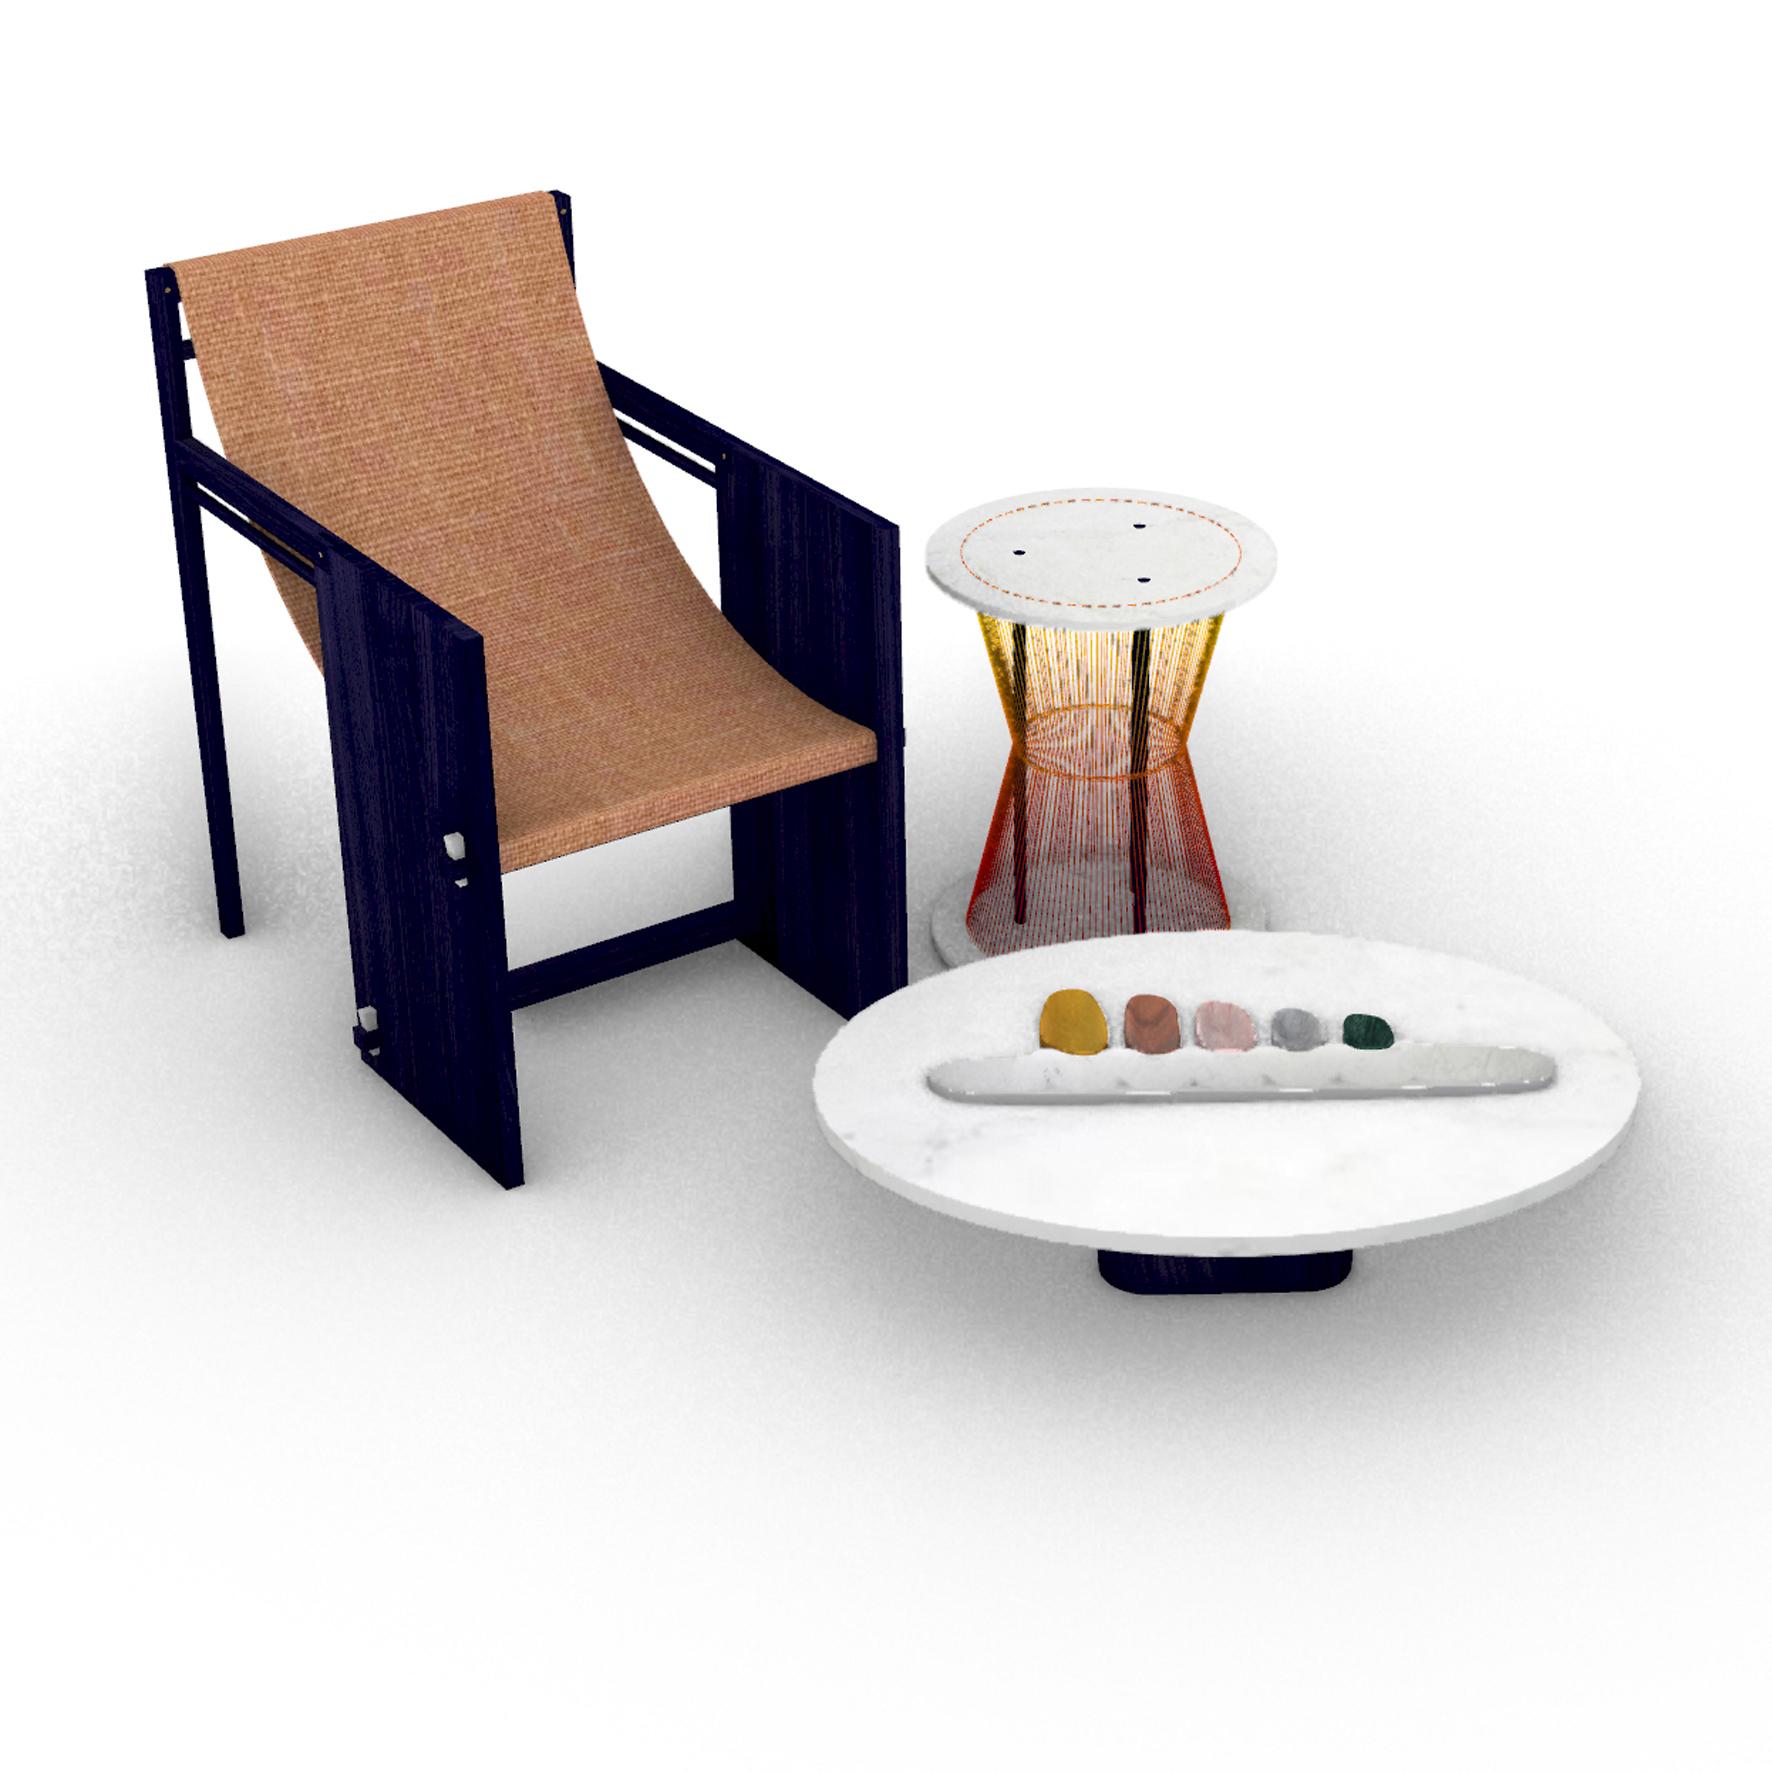 Thali, a Marble Low Table, Design by Matang and Natasha Sumant 2